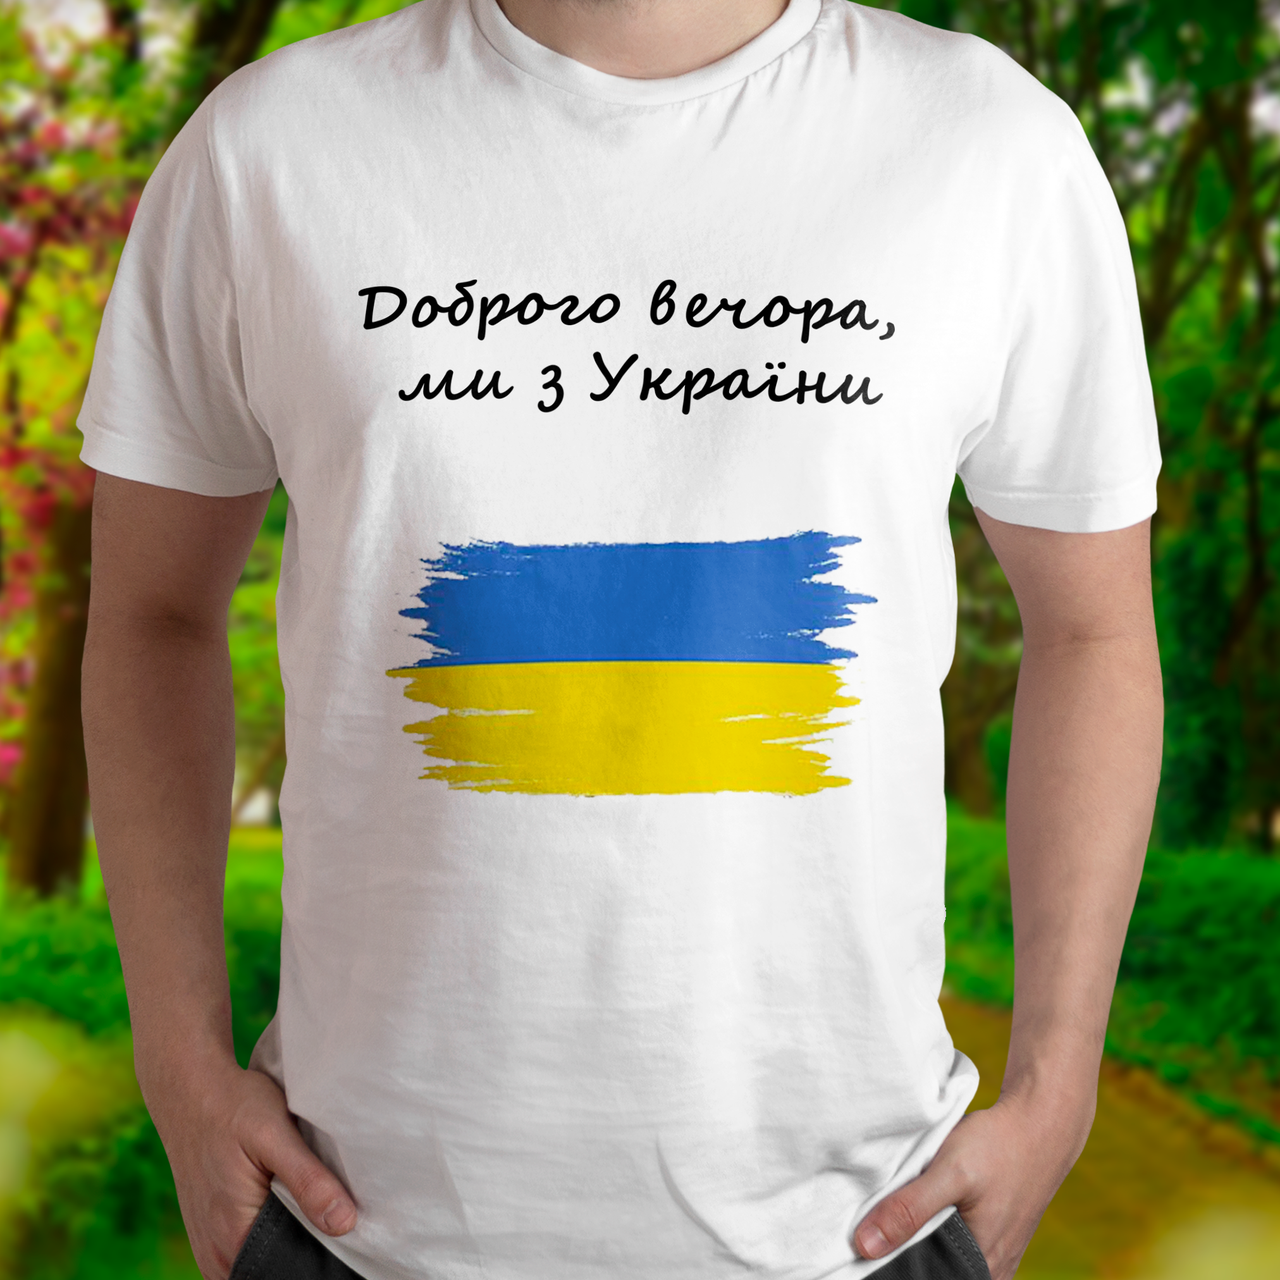 Патріотична чоловіча футболка Доброго вечора, ми з України, біла